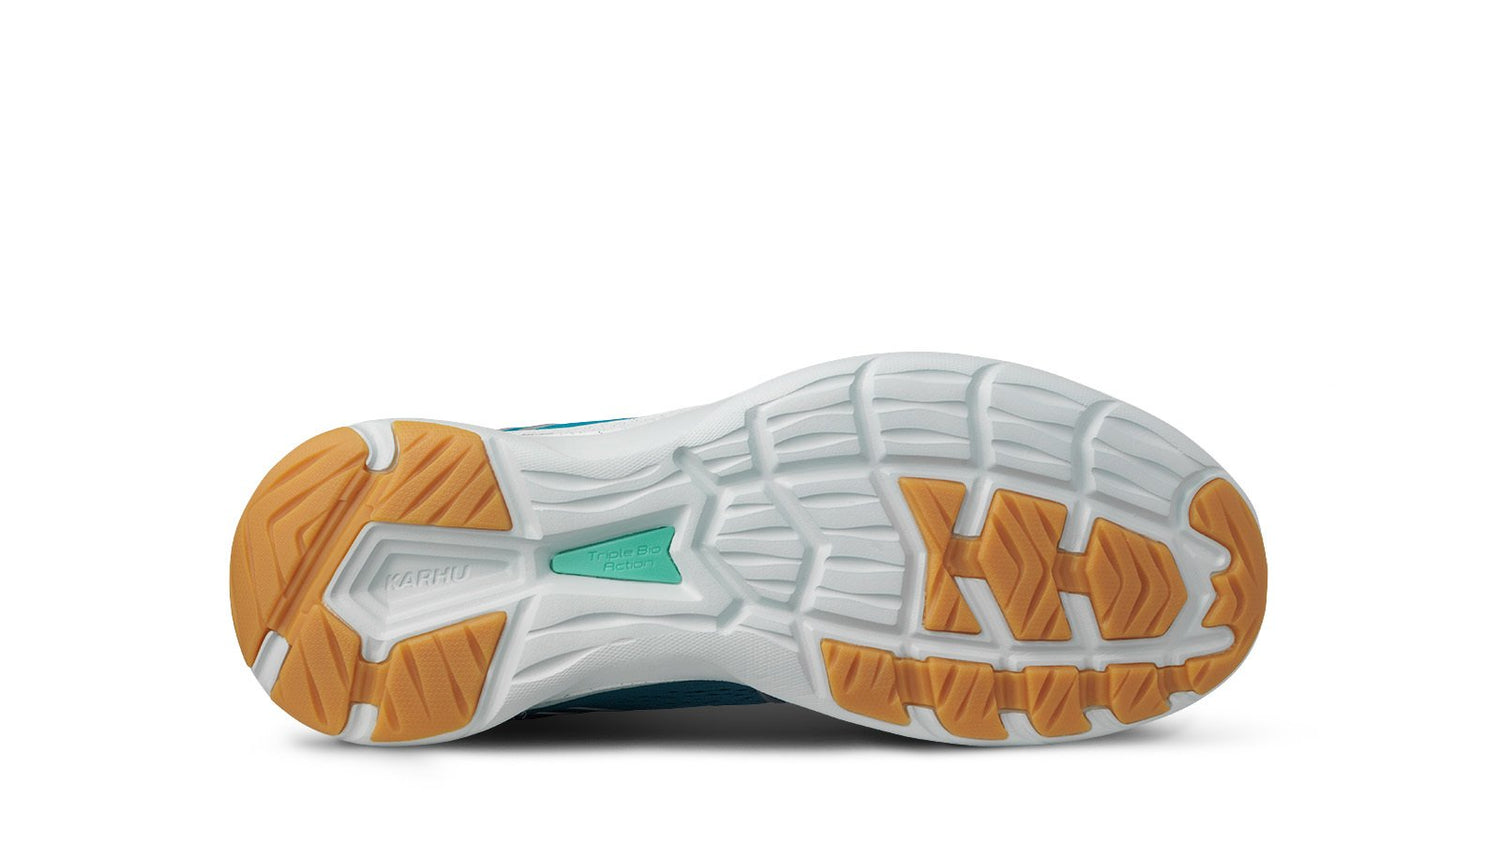 Men's KARHU Fusion 3.5 outsole running shoe